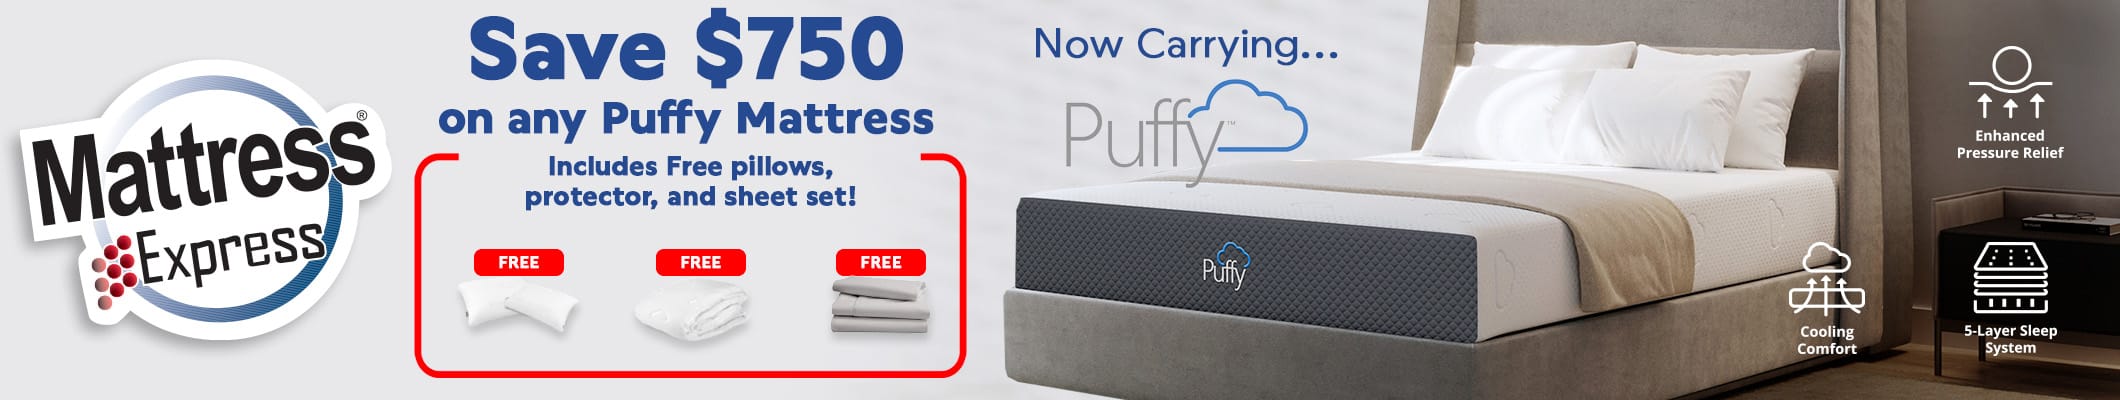 Save $750 on any Puffy Mattress